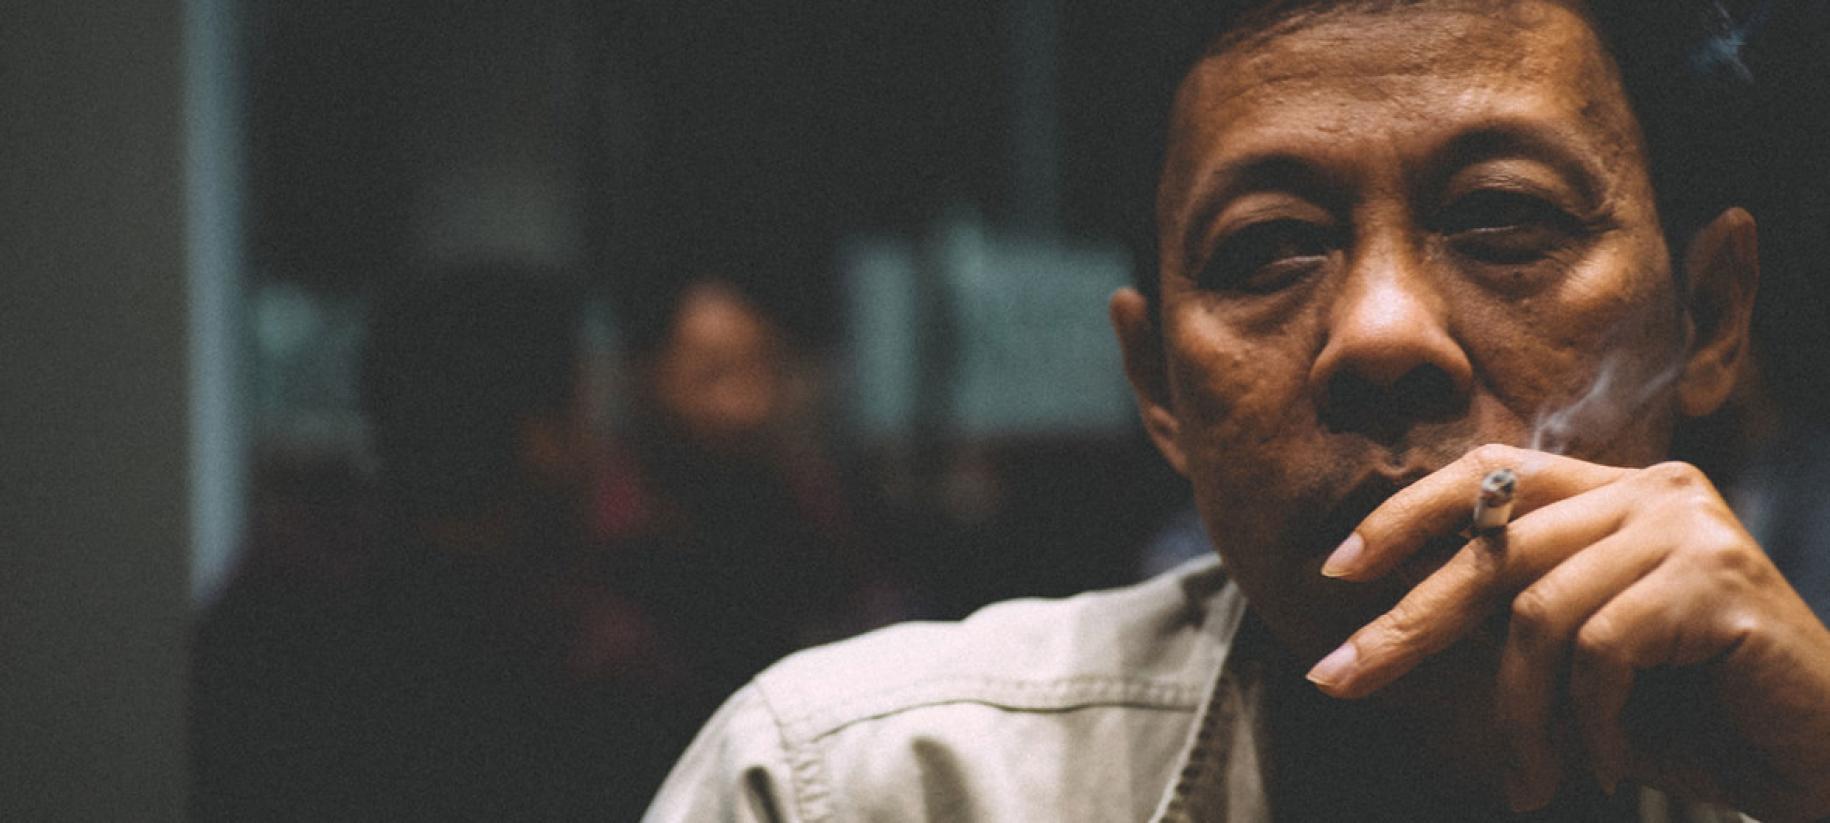 Gros plan sur le visage d'un homme d'origine asiatique en train de fumer une cigarette dans une pièce sombre.